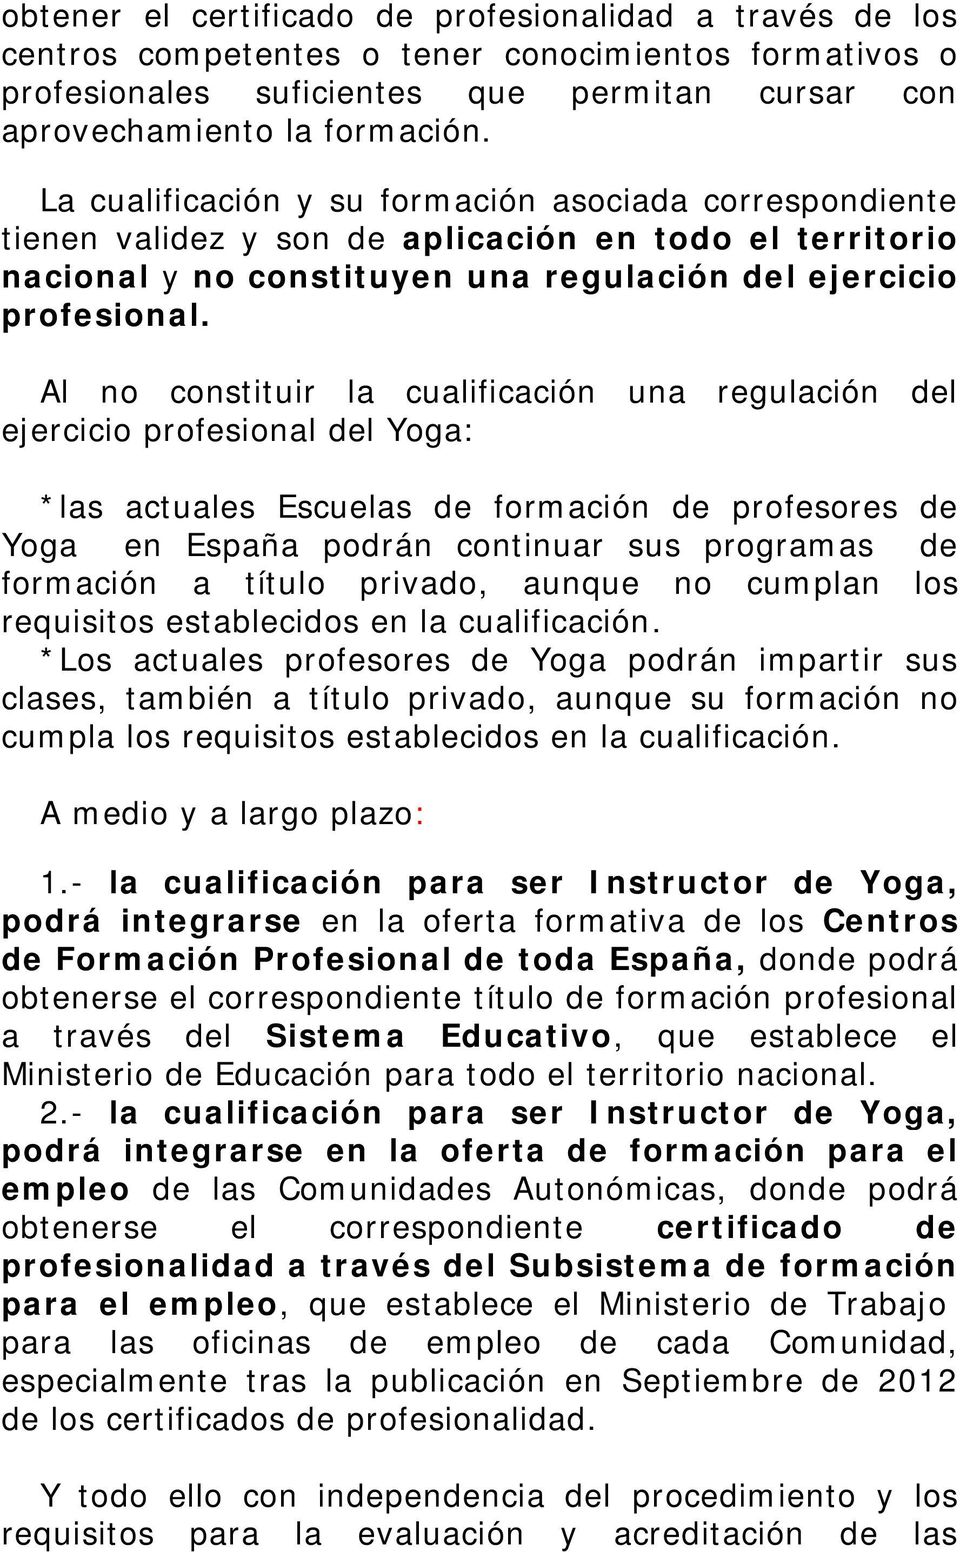 Al no constituir la cualificación una regulación del ejercicio profesional del Yoga: *las actuales Escuelas de formación de profesores de Yoga en España podrán continuar sus programas de formación a